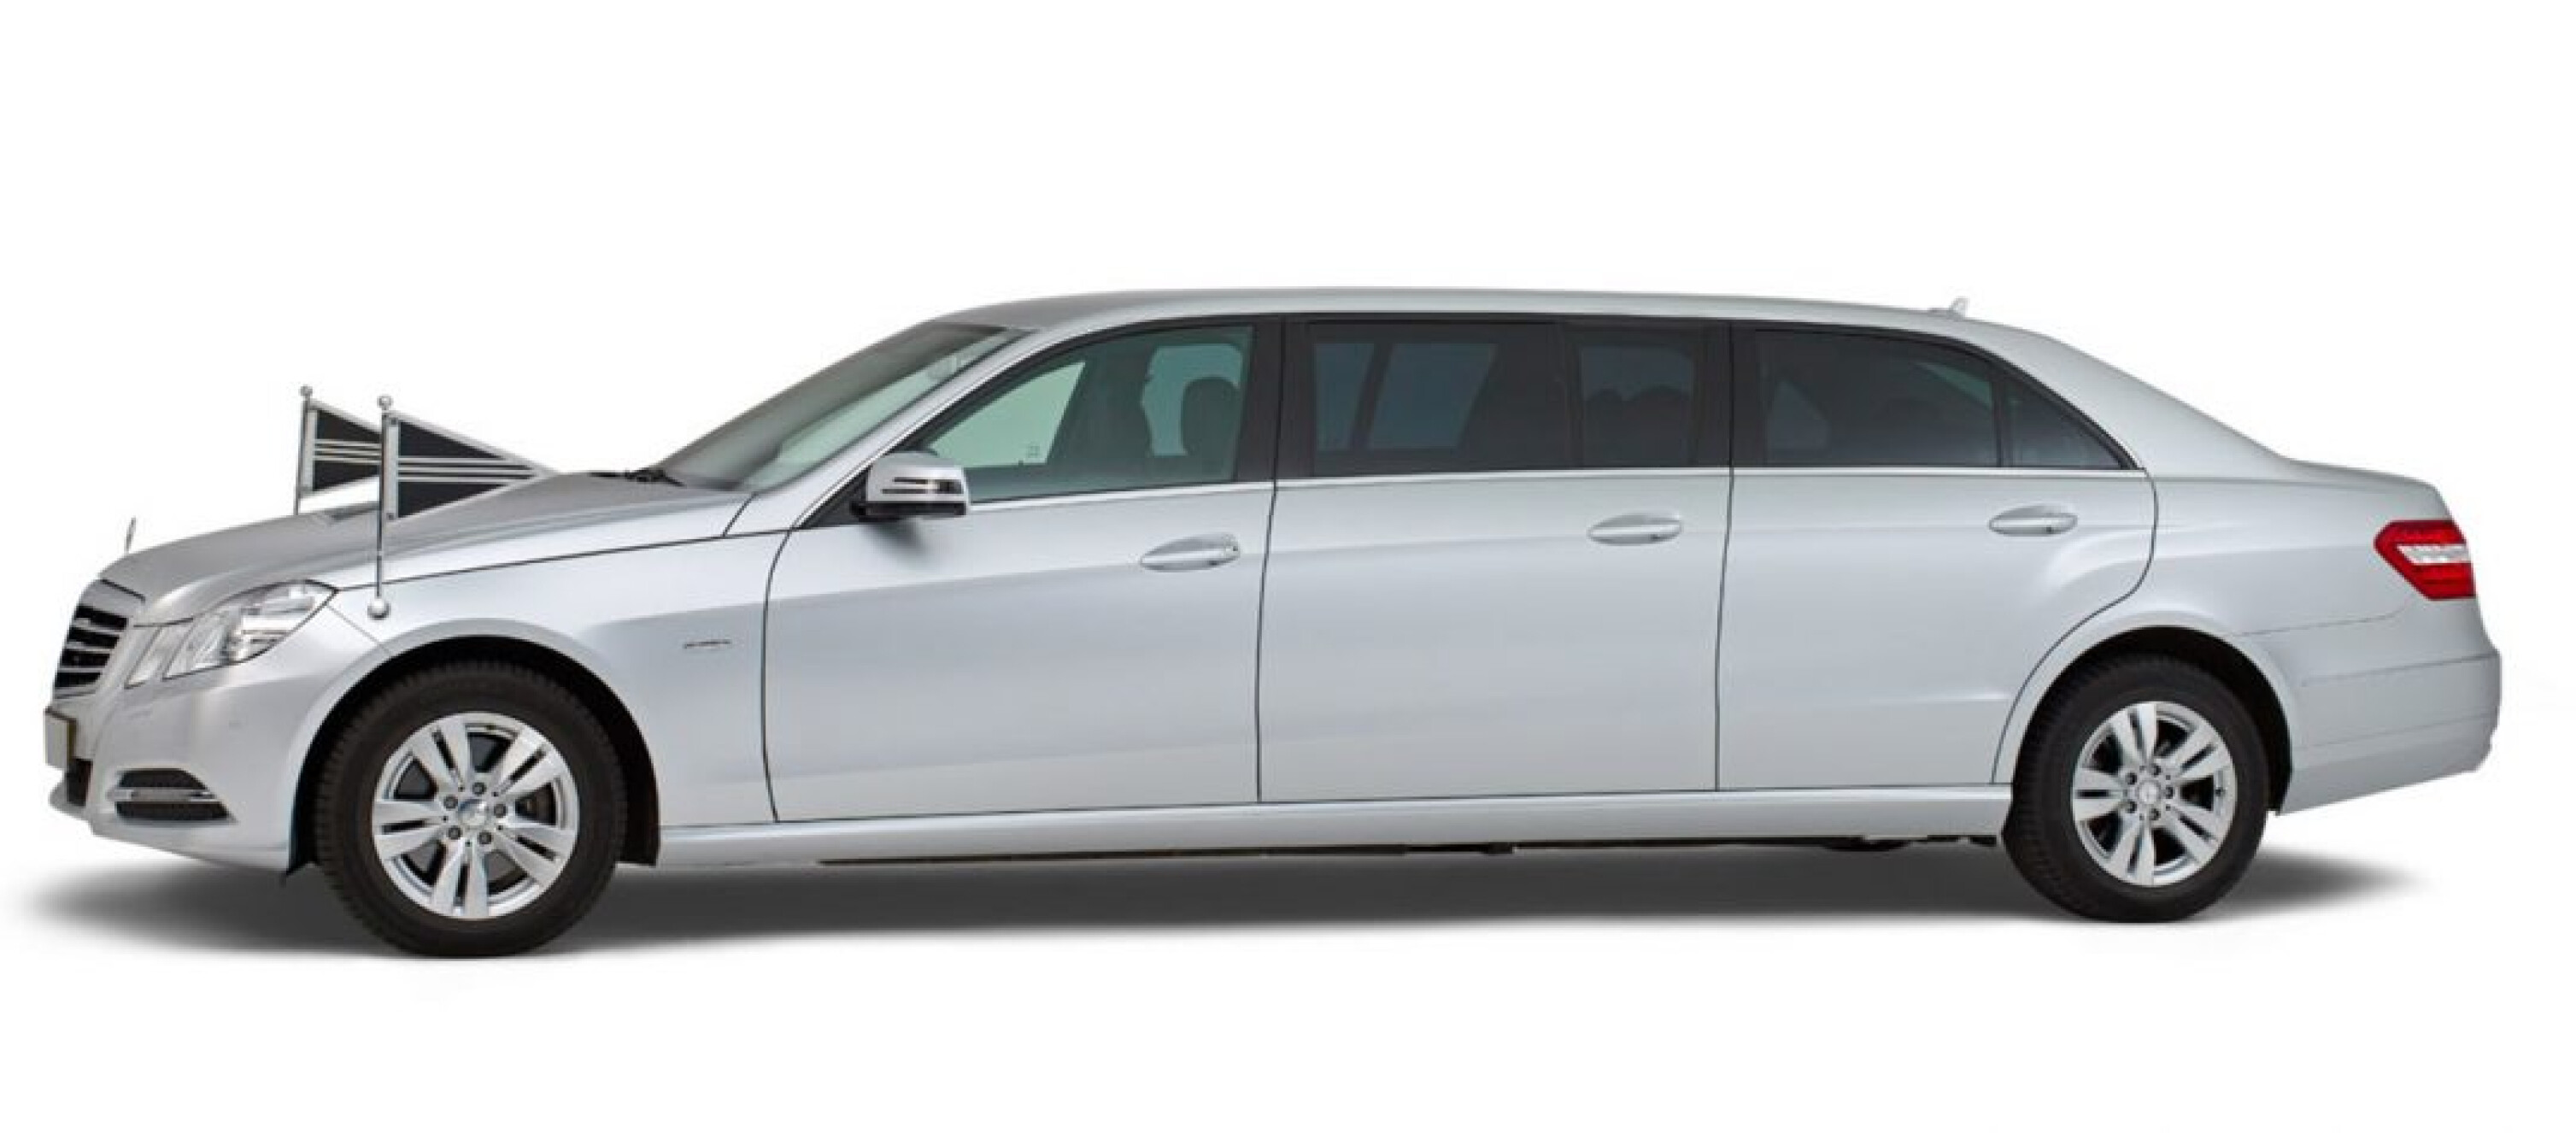 Mercedes-grijs-7-persoons-Volgauto-1080x475.jpg